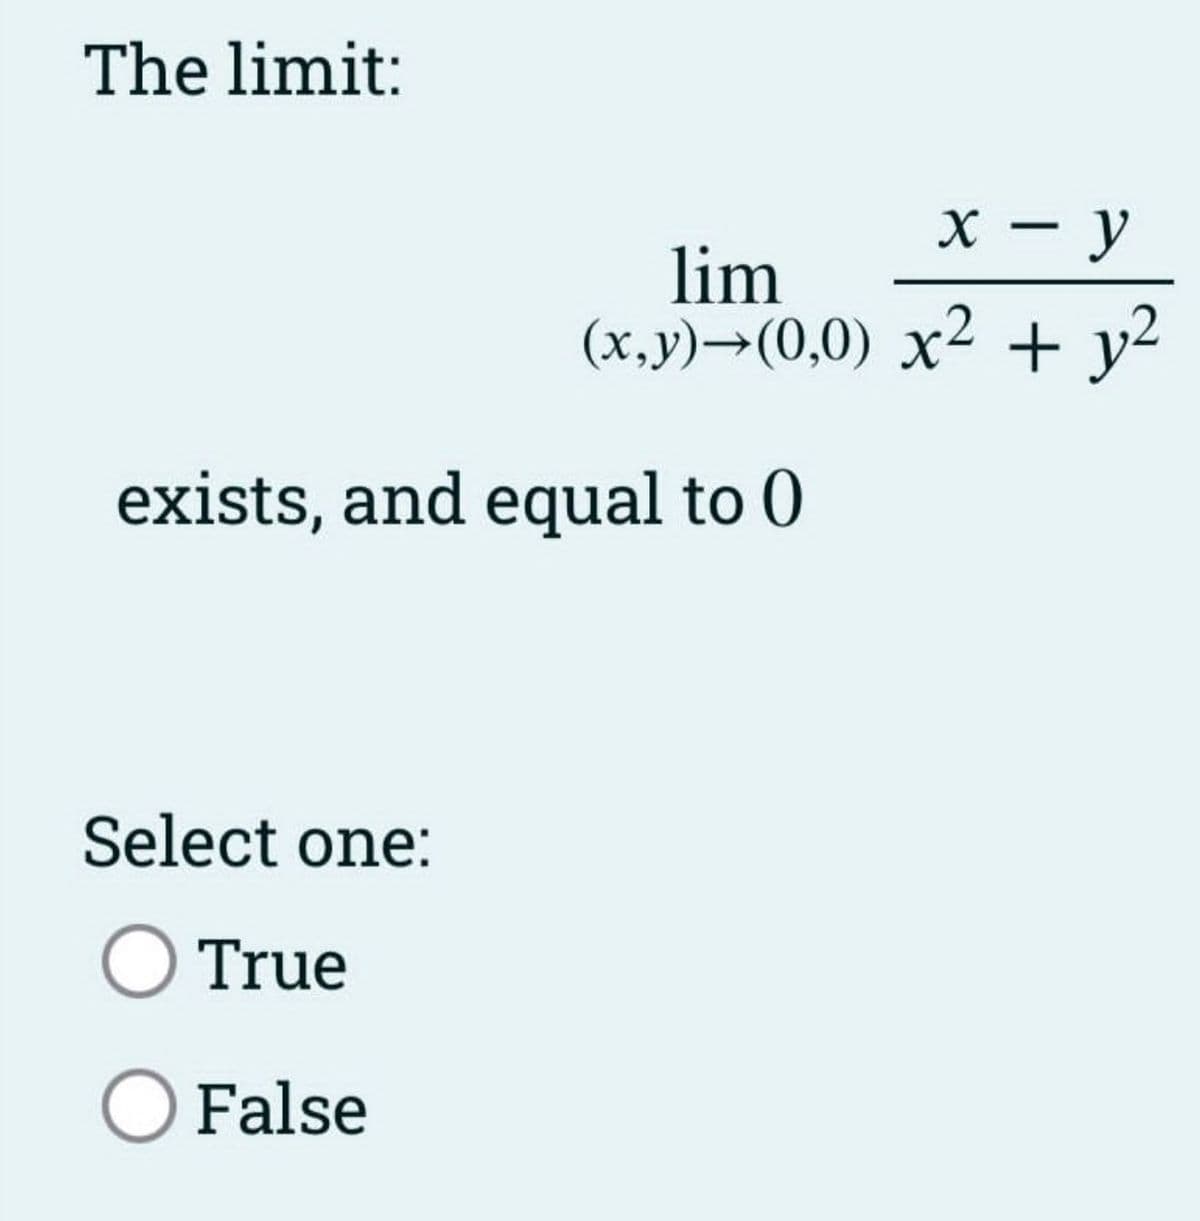 The limit:
x - y
lim
(x,y)→(0,0) x² + y²
exists, and equal to 0
Select one:
O True
O False